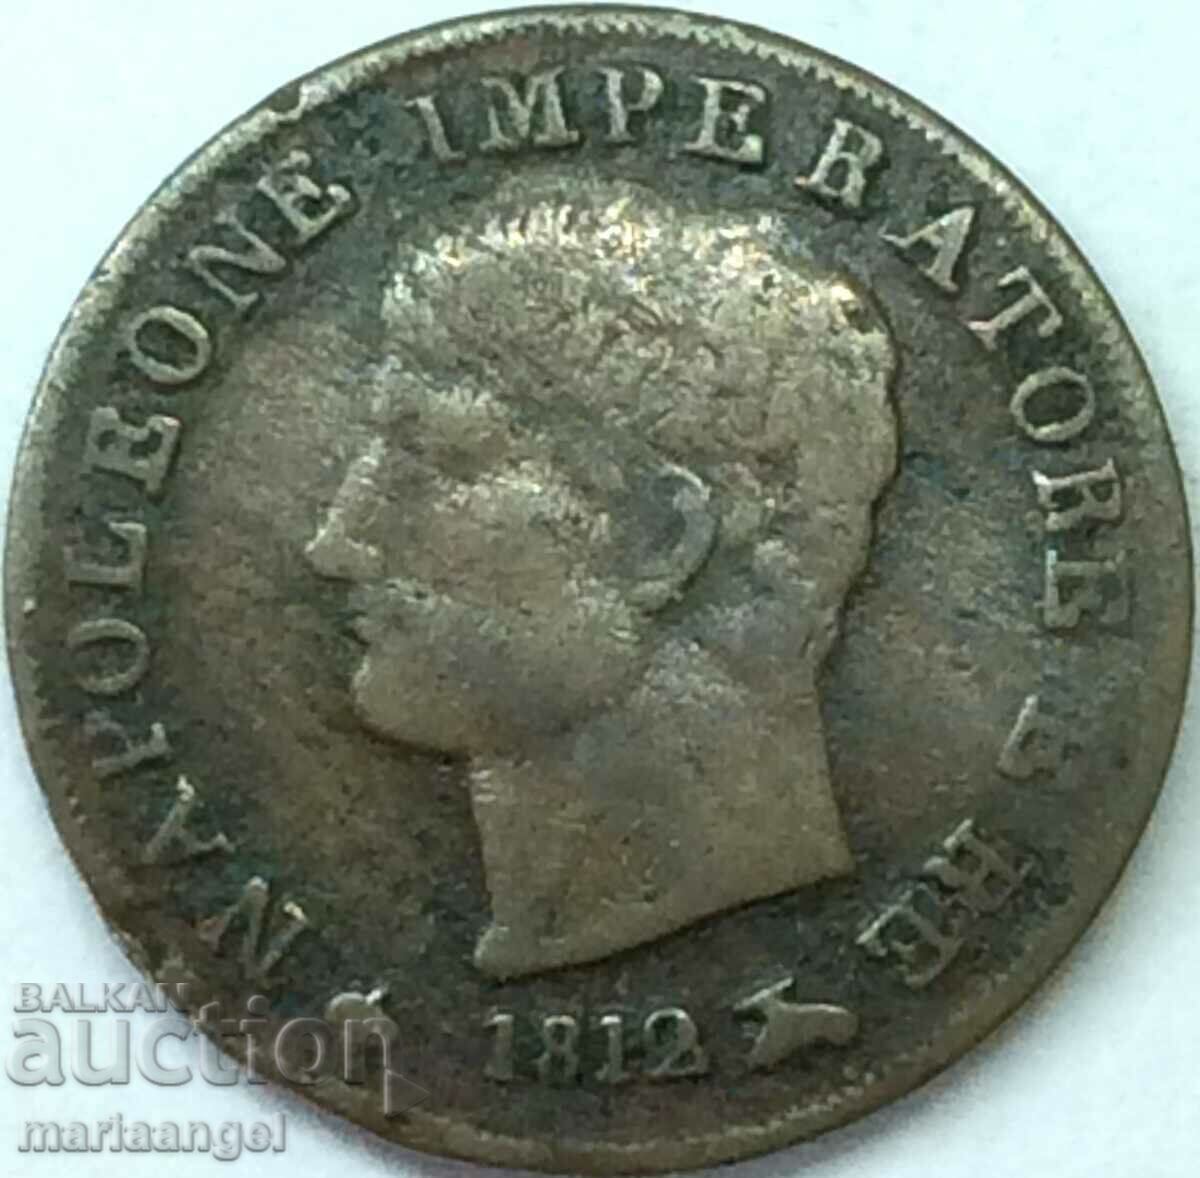 Napoleon 1 centesimo 1812 Italia M - Milano med